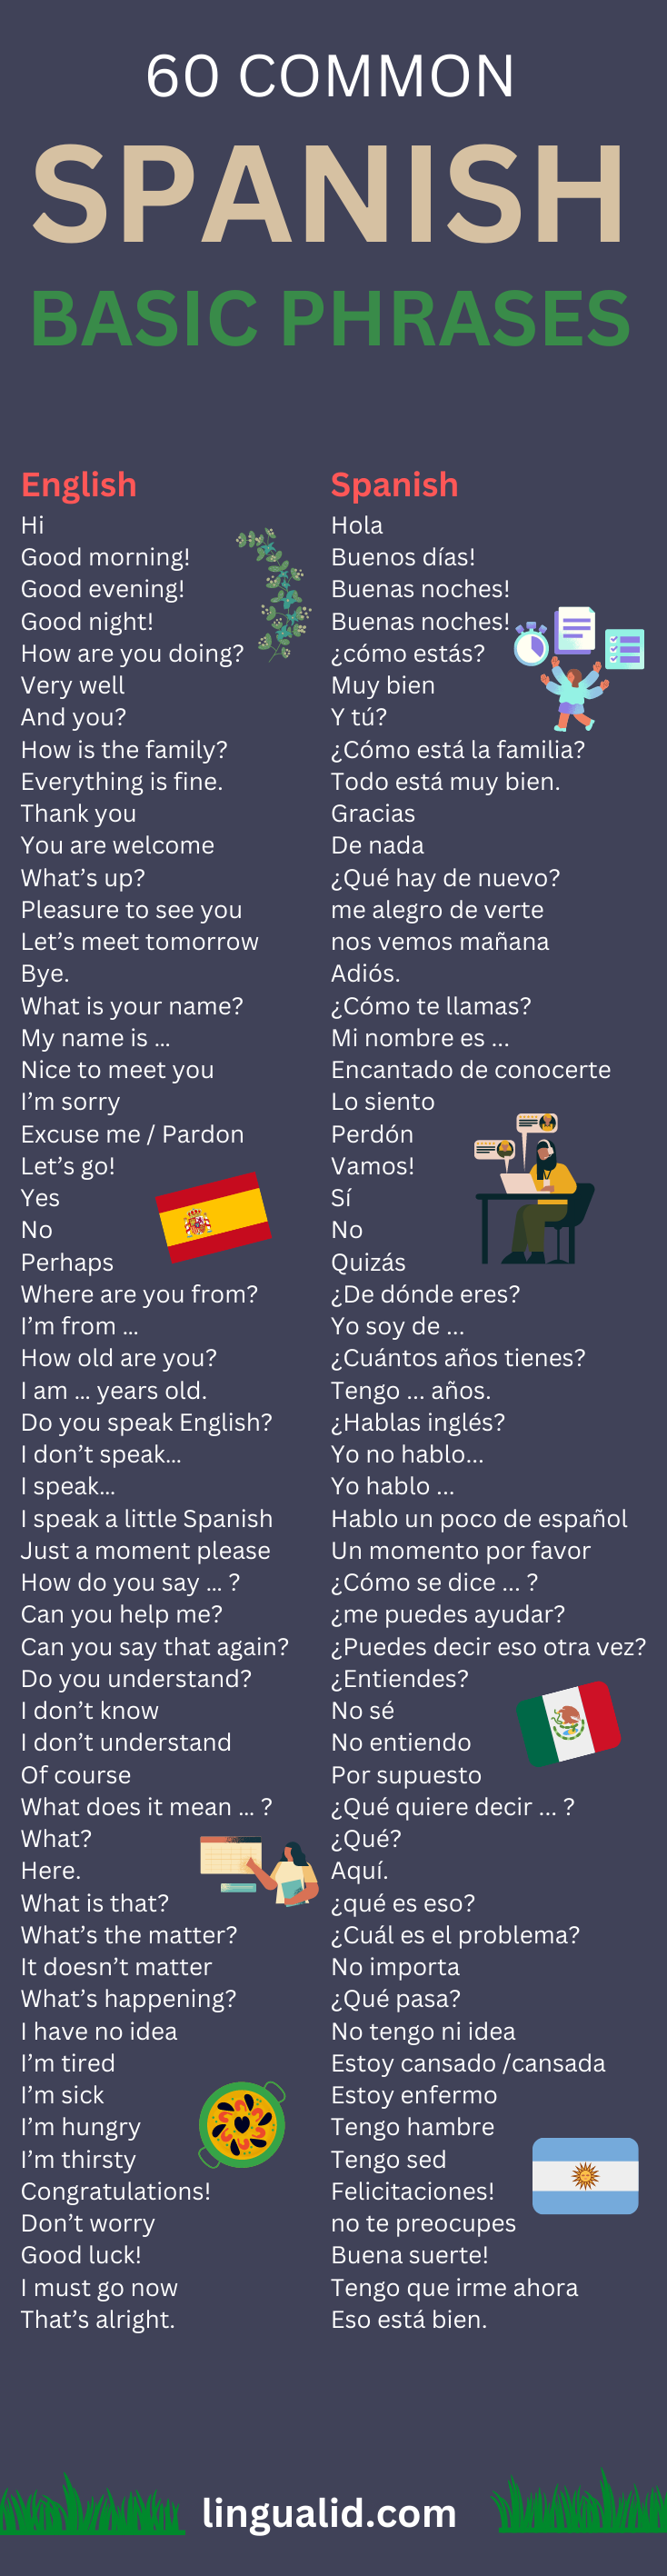 basic spanish phrases visual